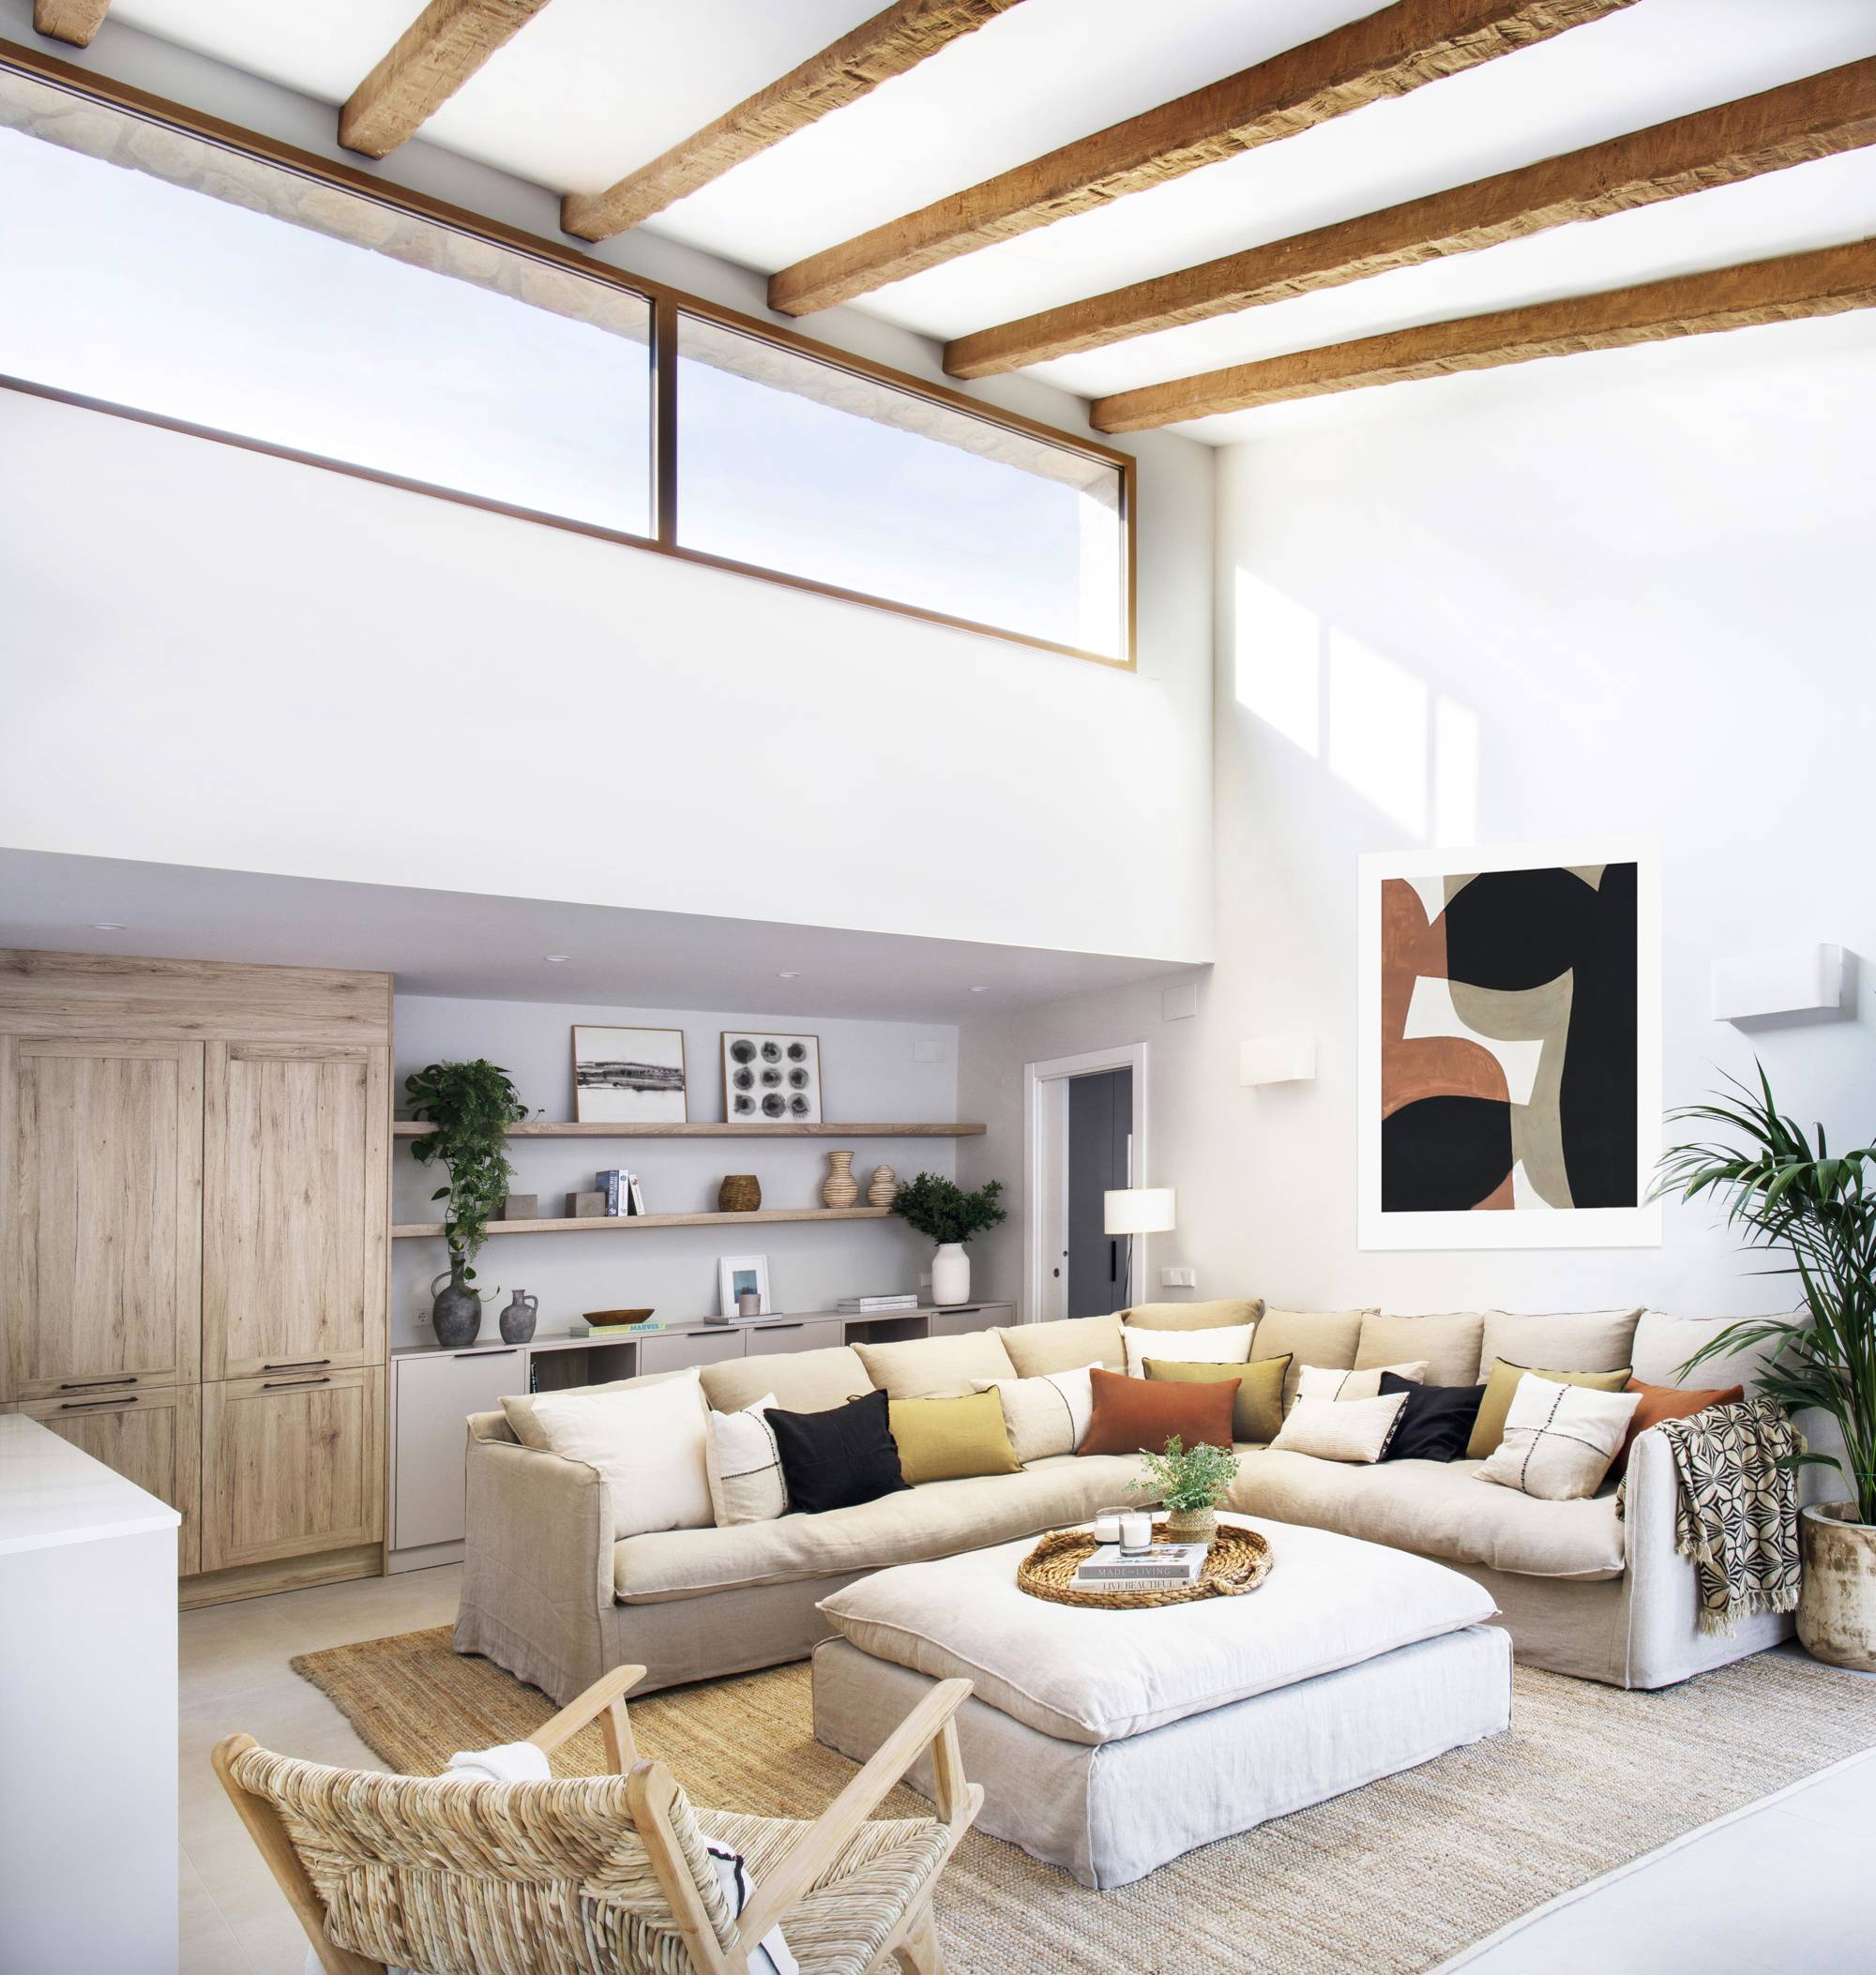 Salón con sofá beige en forma de L, puff a juego, butaca y alfombra de fibras y vigas de madera en el techo.